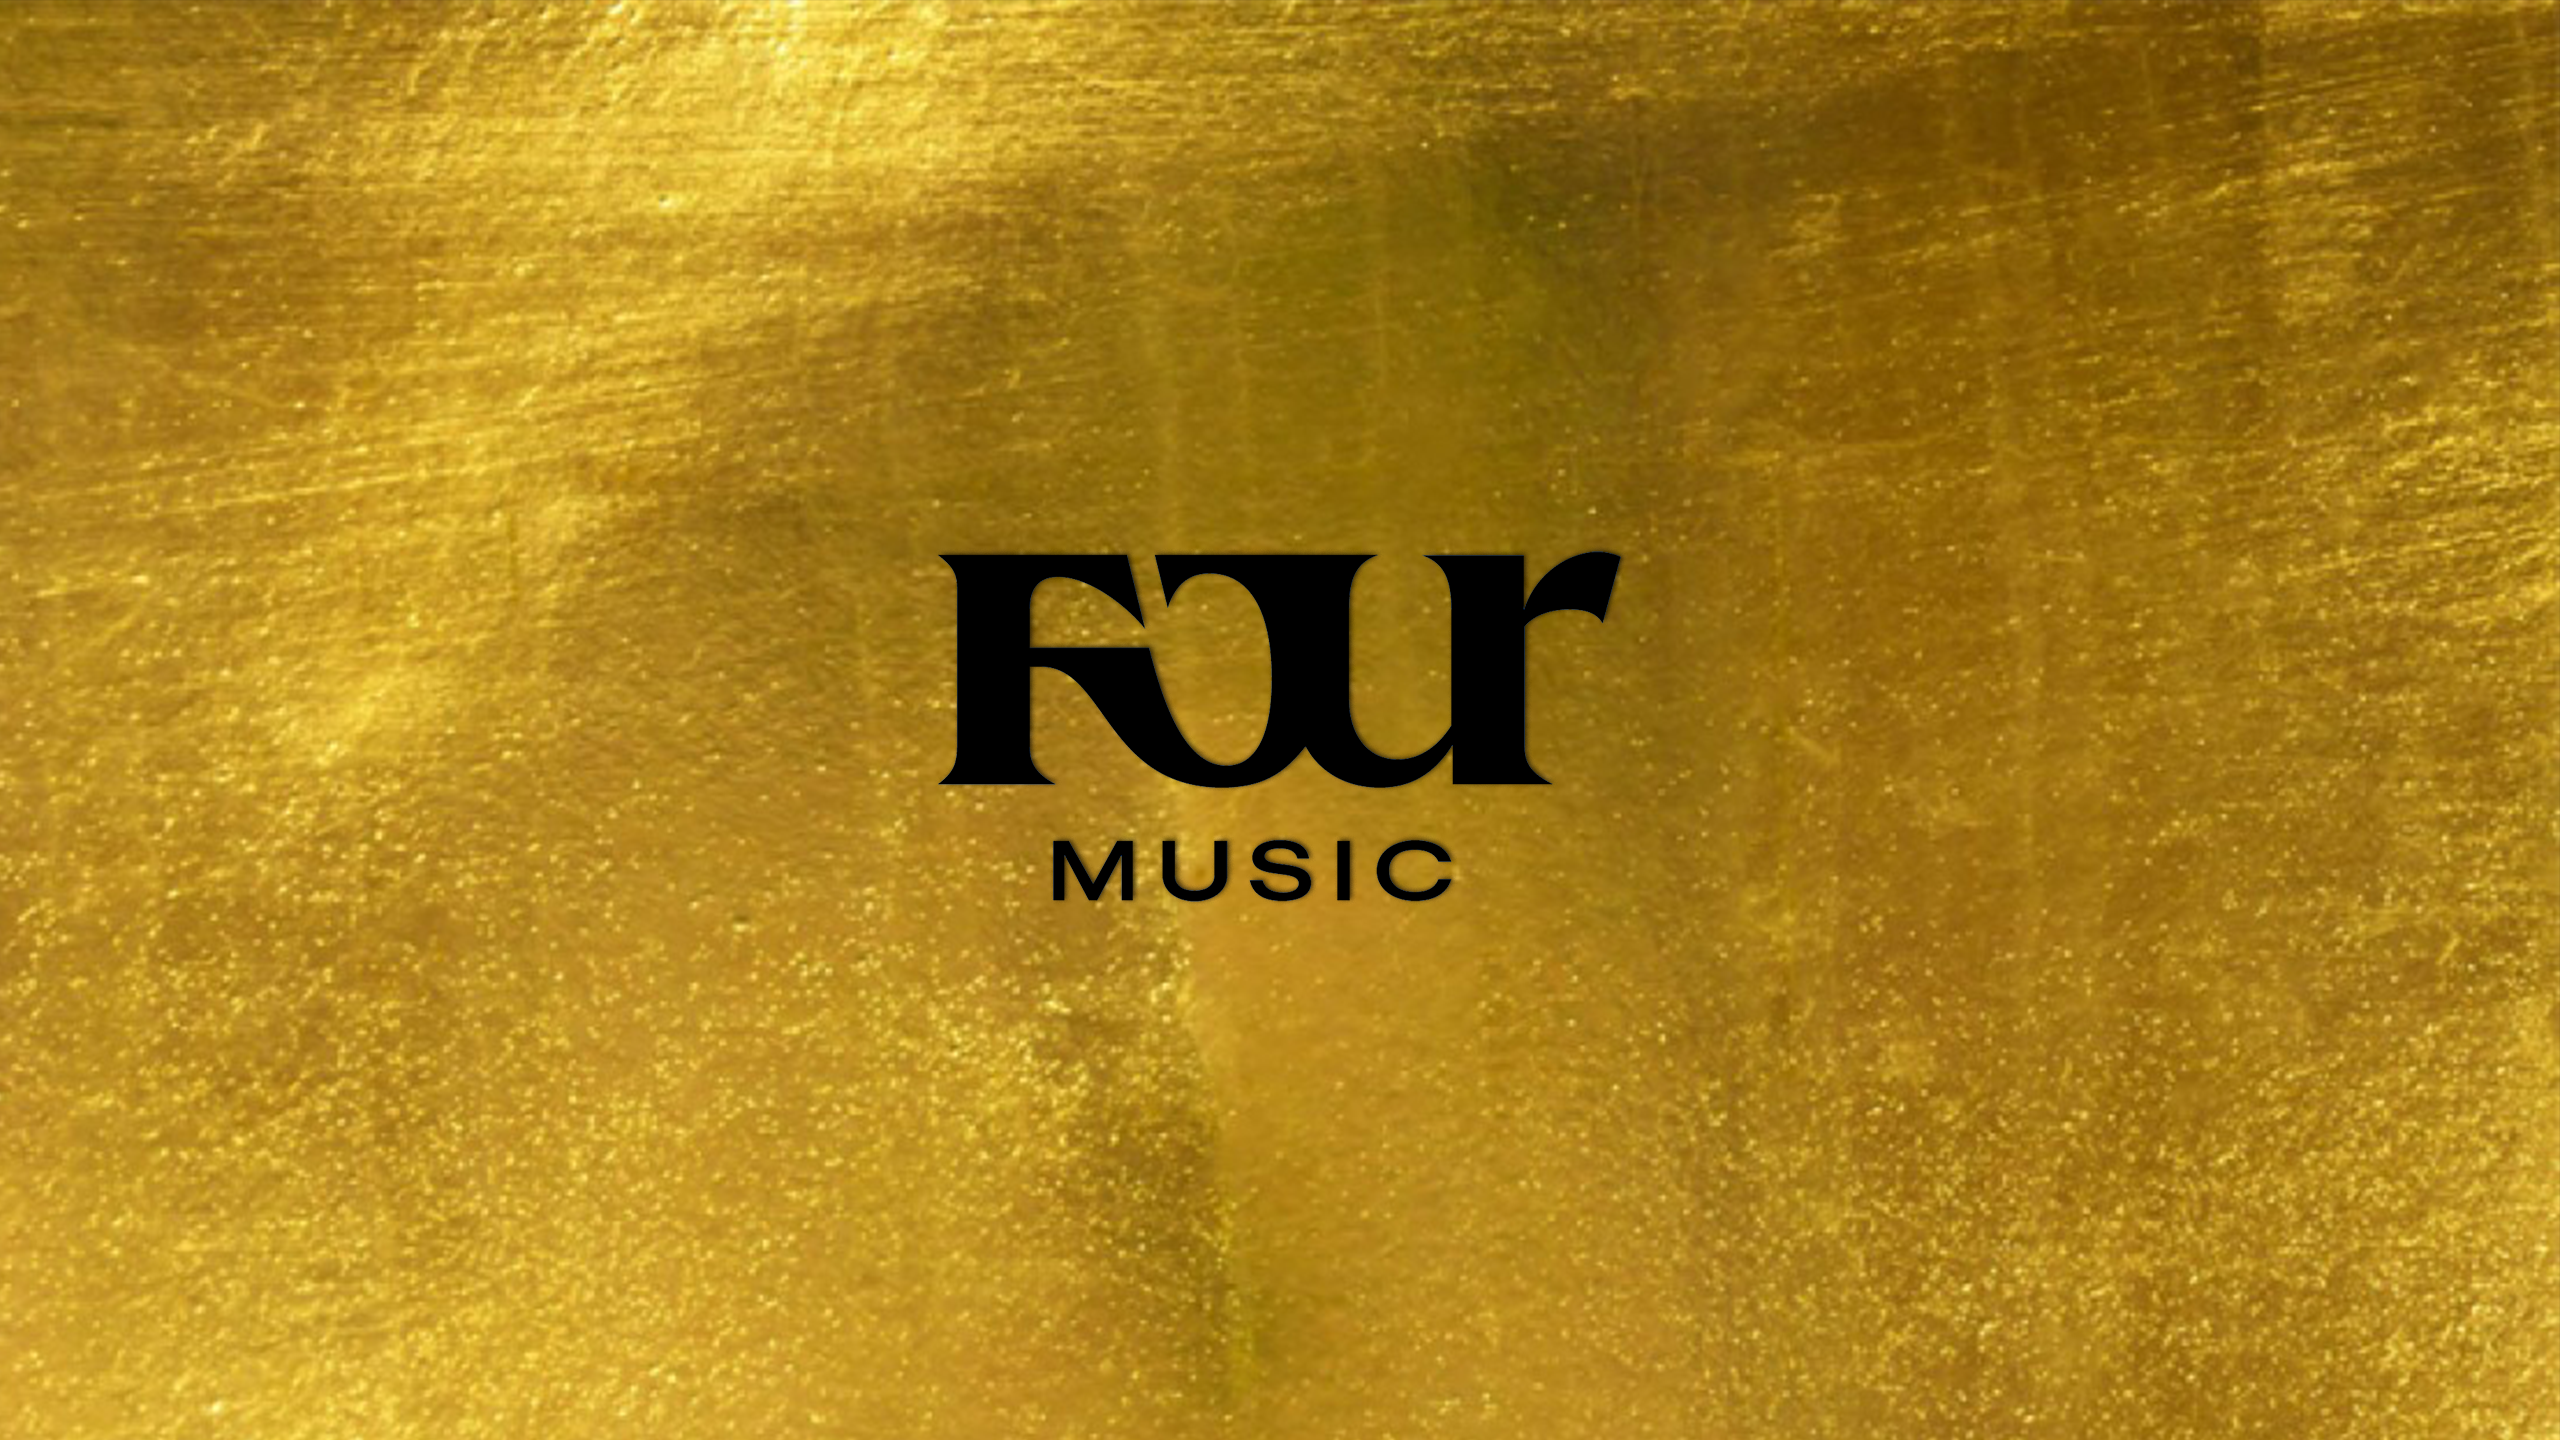 Four Music feiert 25 jähriges Bestehen